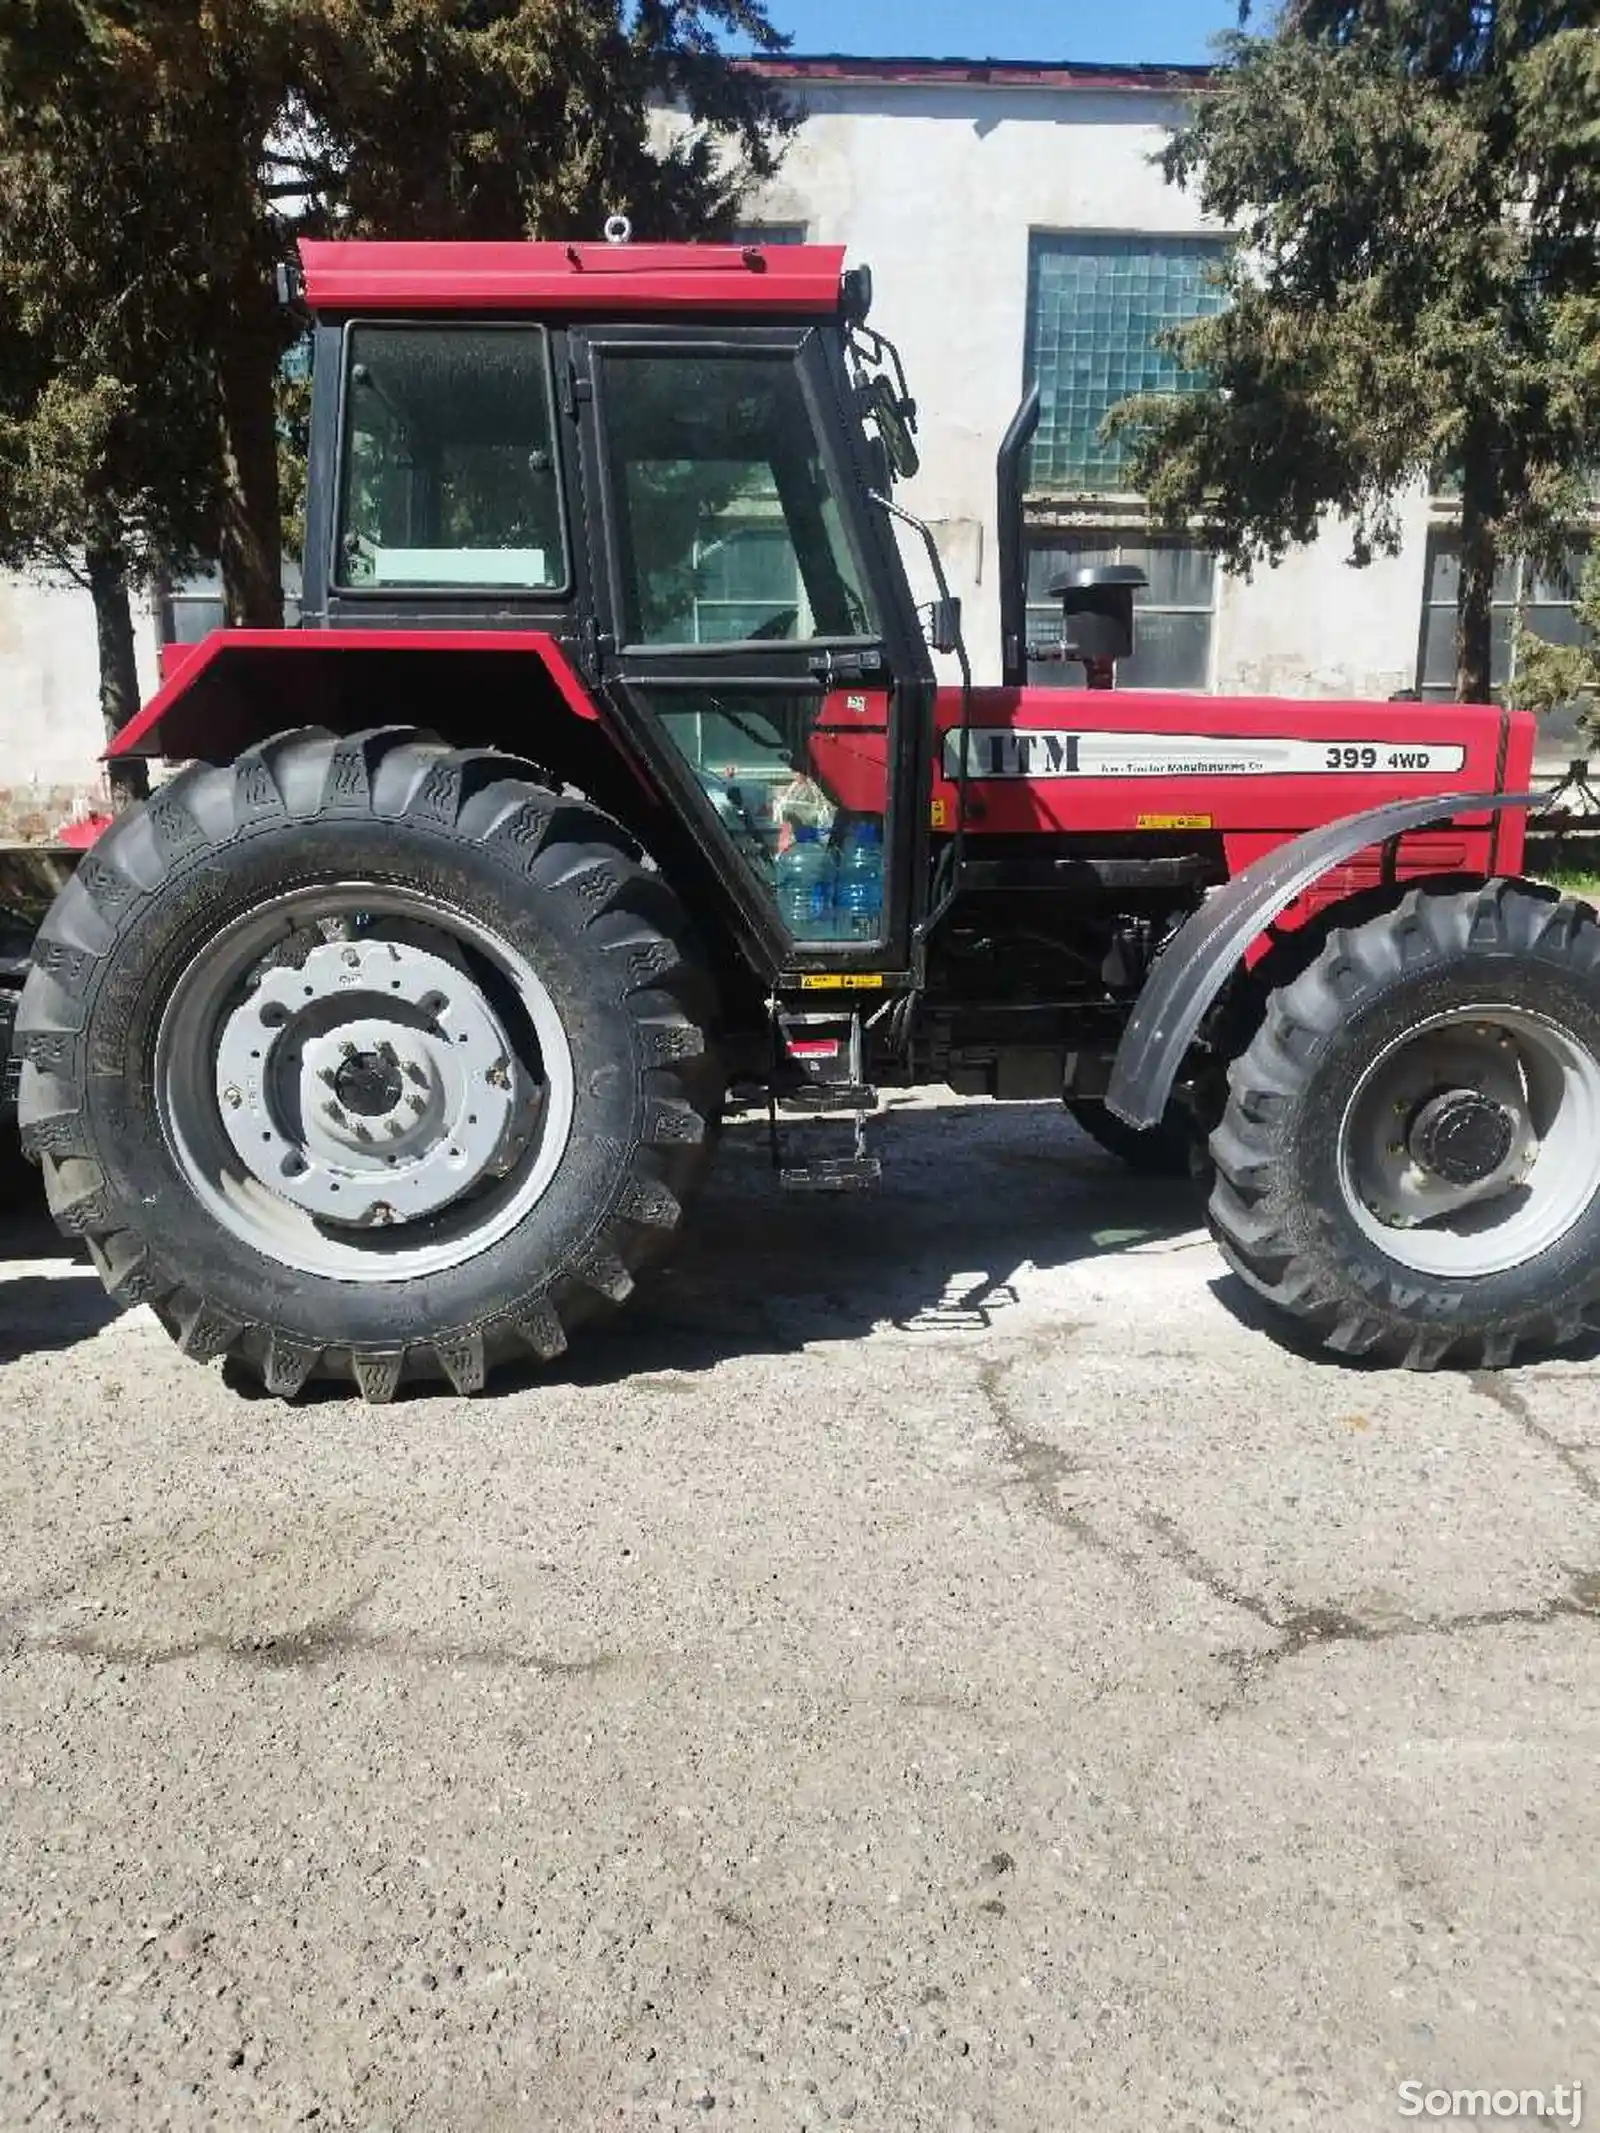 Трактор Tajiran 399-4Wd-3